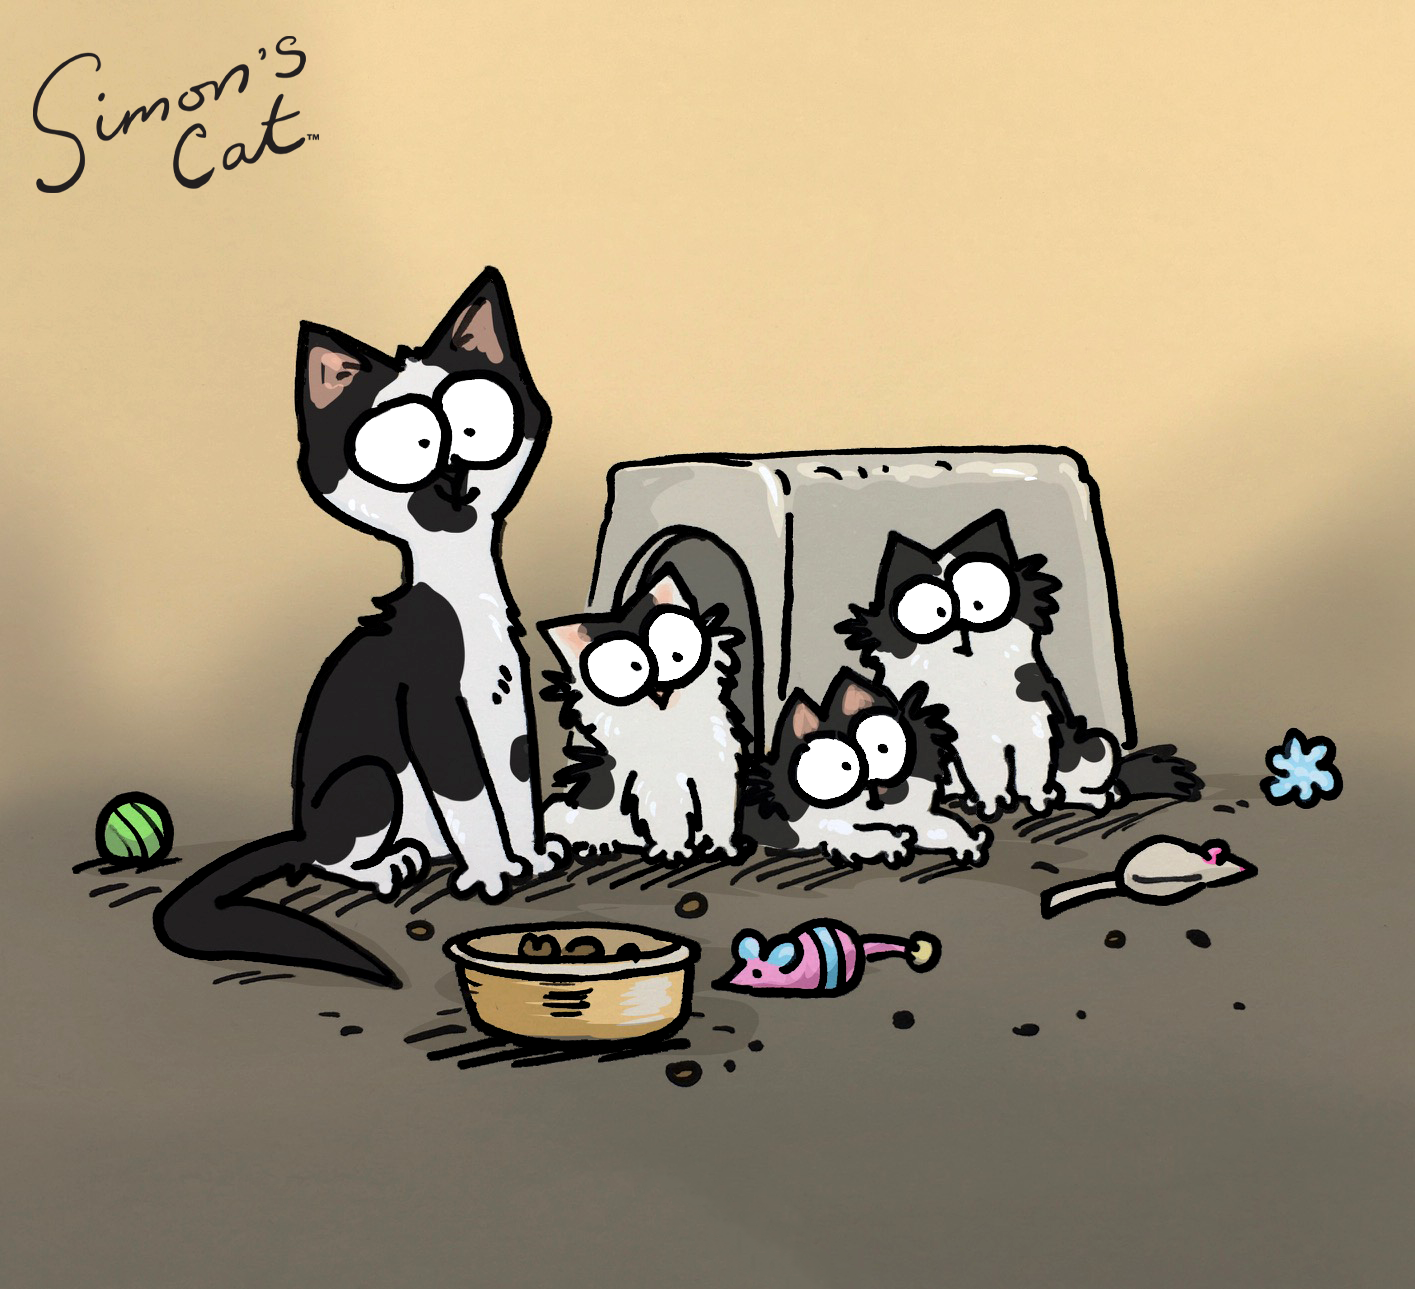 Sponsorkatten Princess och hennes söta kattungar har ritats av den berömda illustratören Simon Tofield